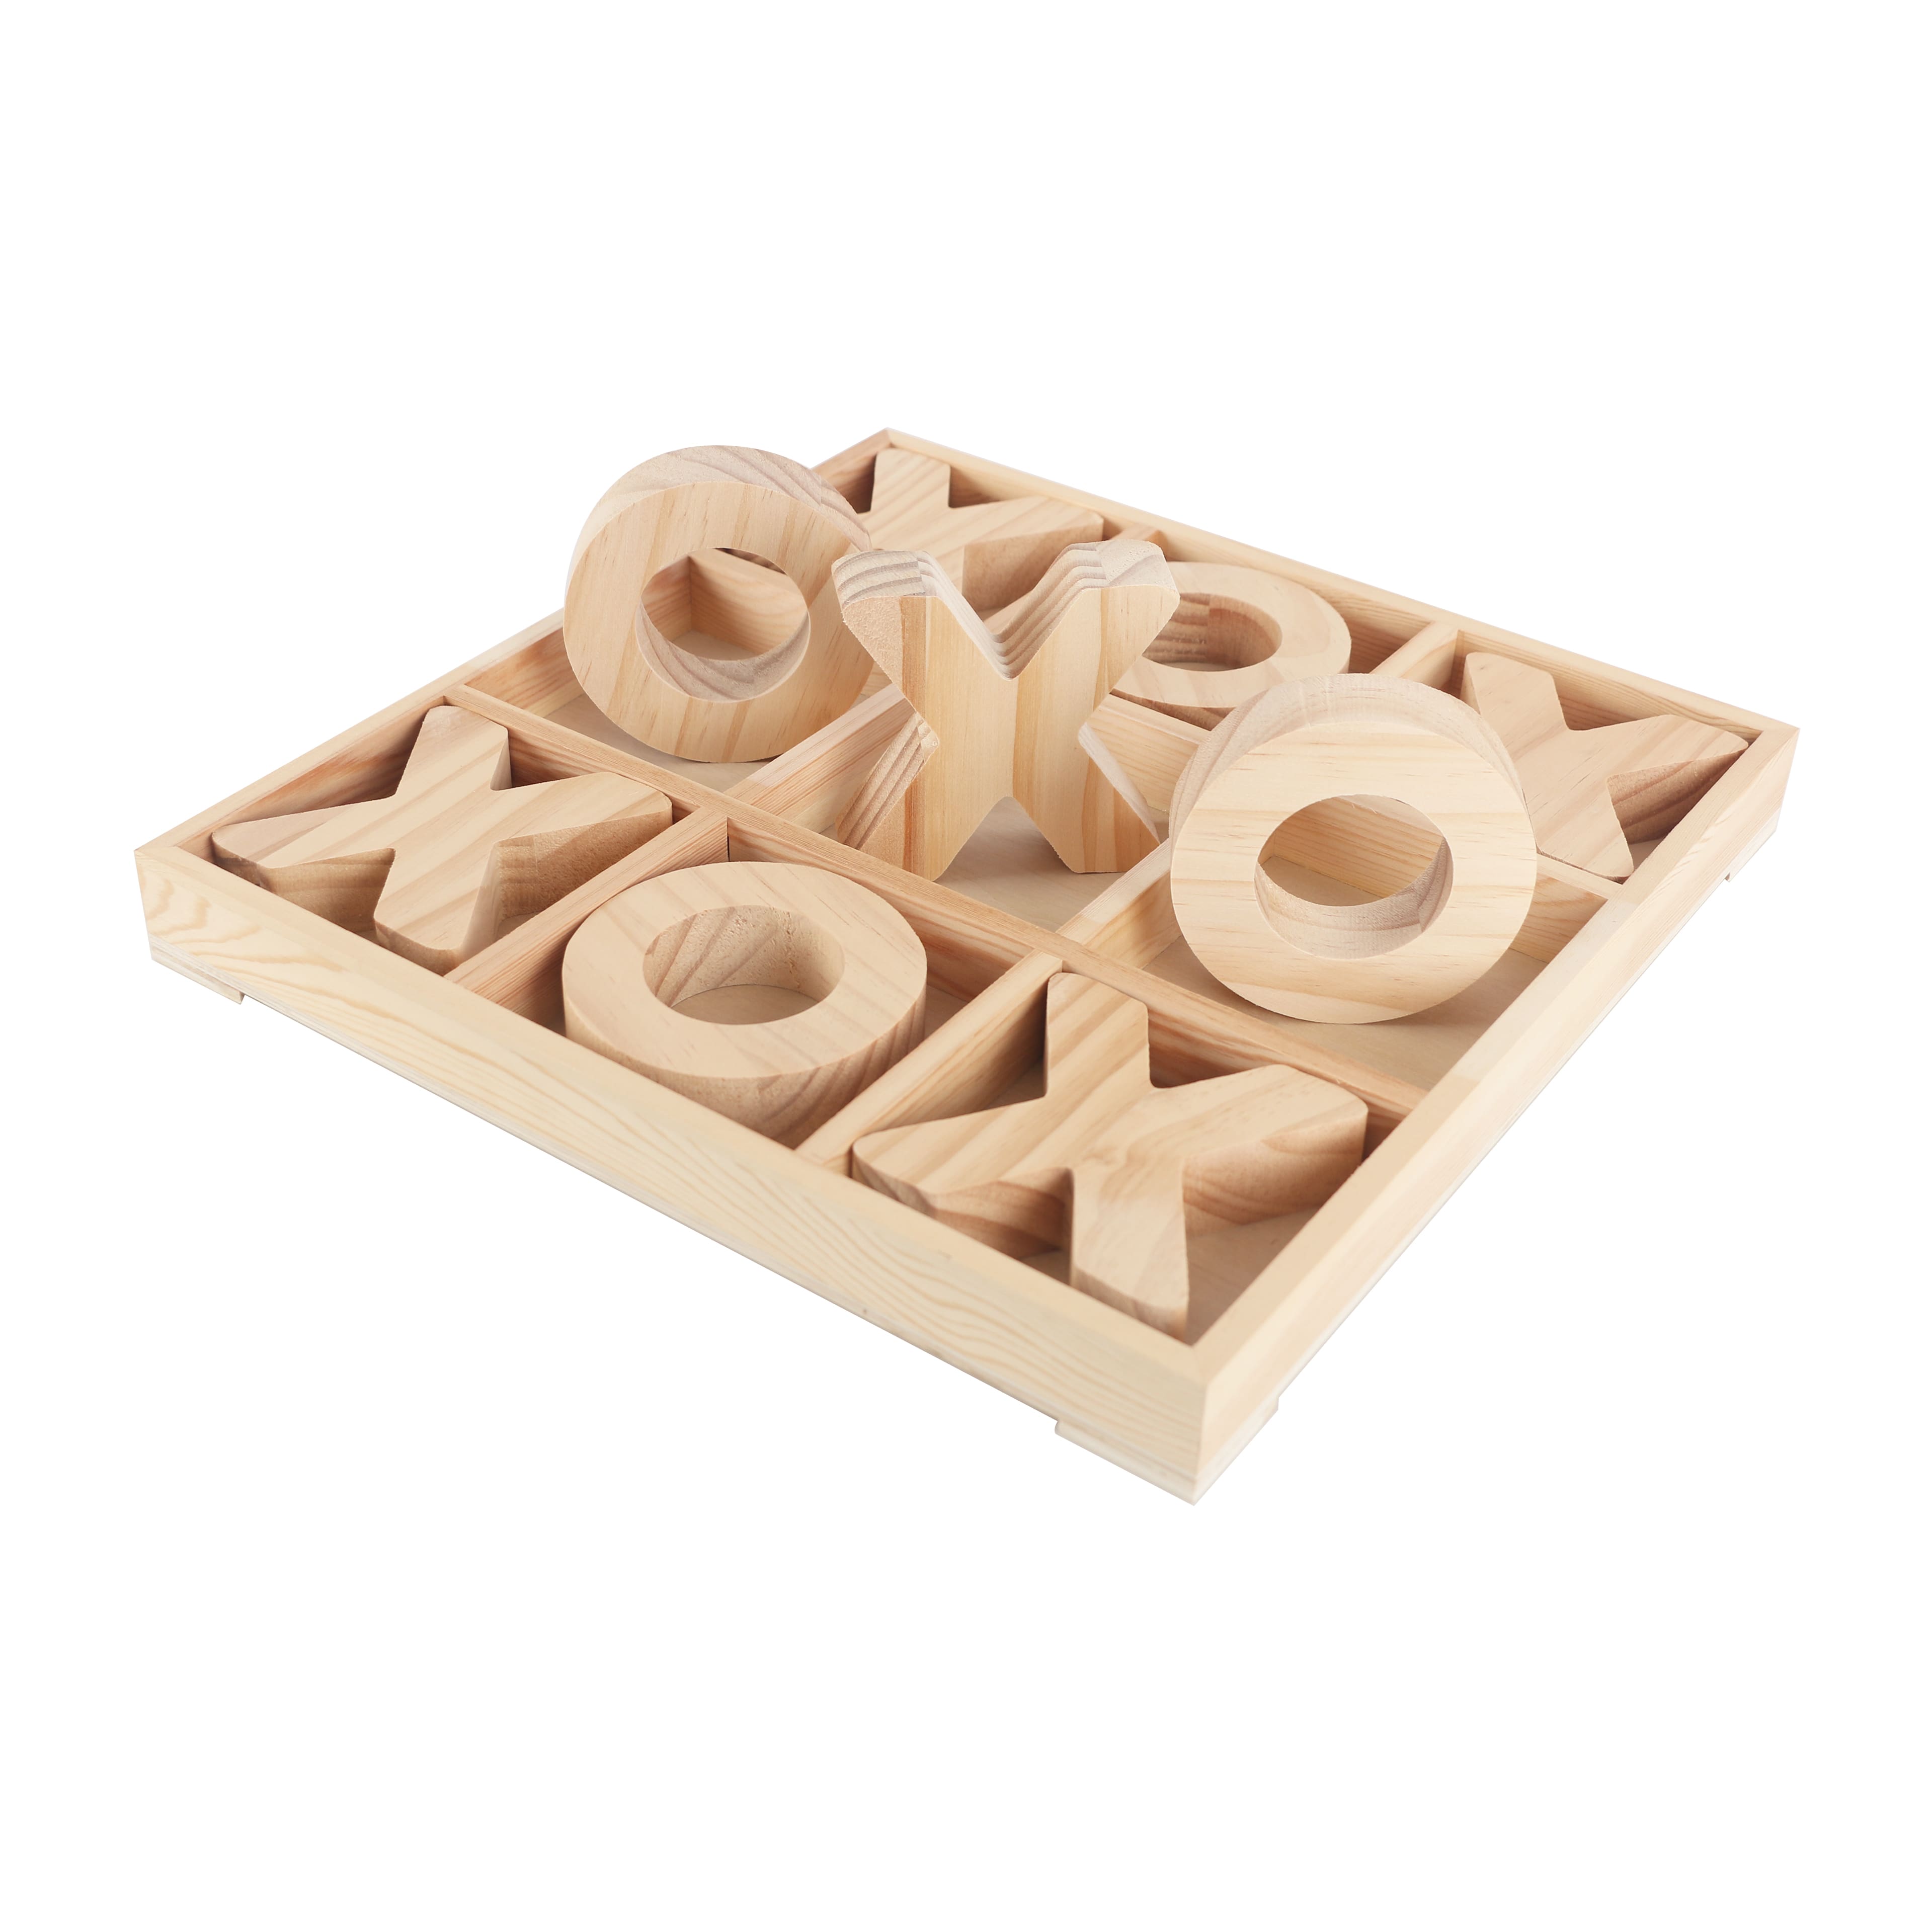 Oversized Plywood Tic Tac Toe Set by Make Market&#xAE;